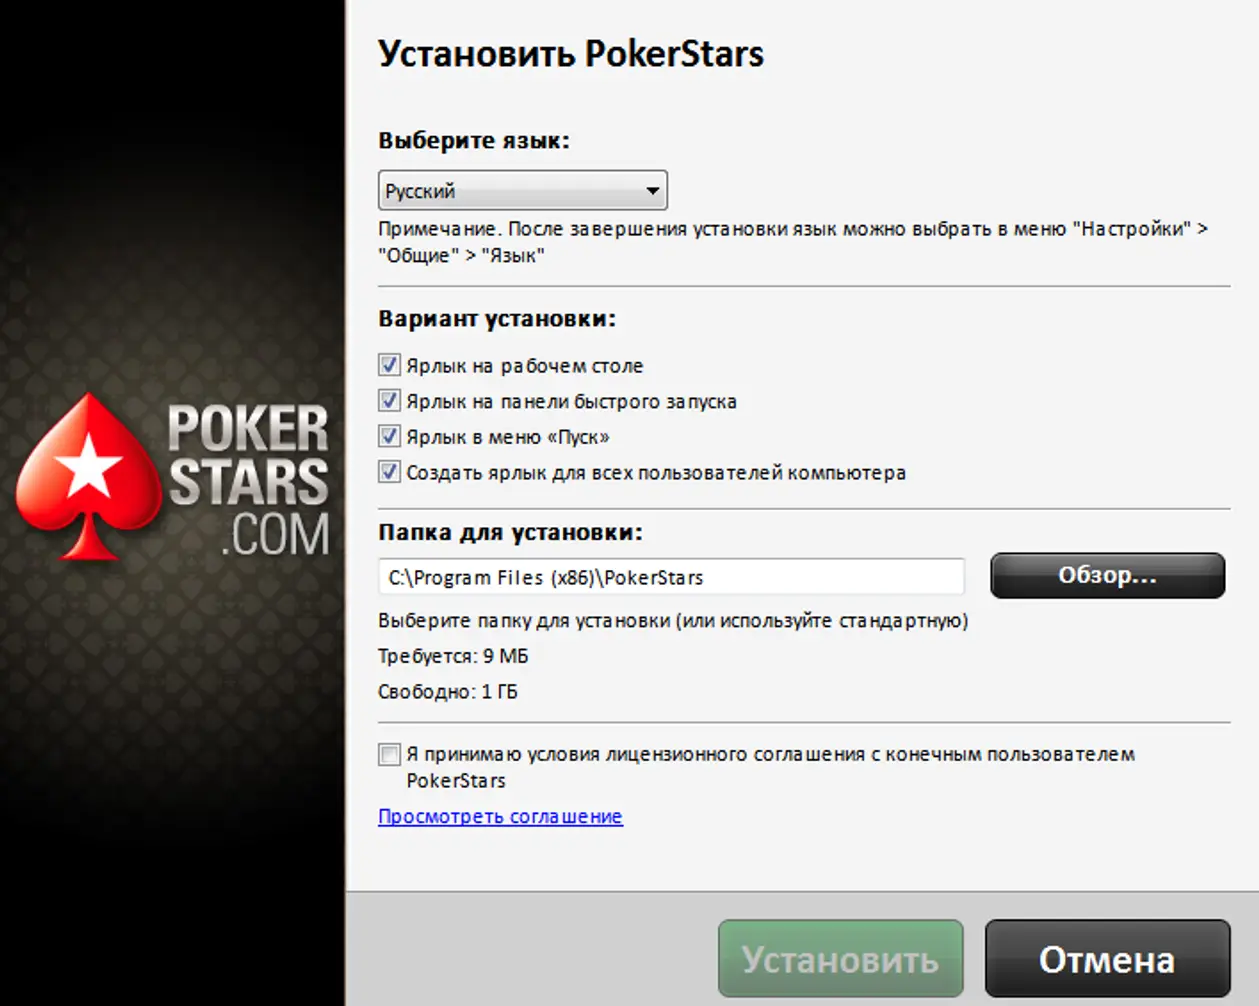 Poker stars com. Покер старс. Покер старс для игры на деньги. Покерстарс клиент для игры на деньги. Приложение pokerstars.